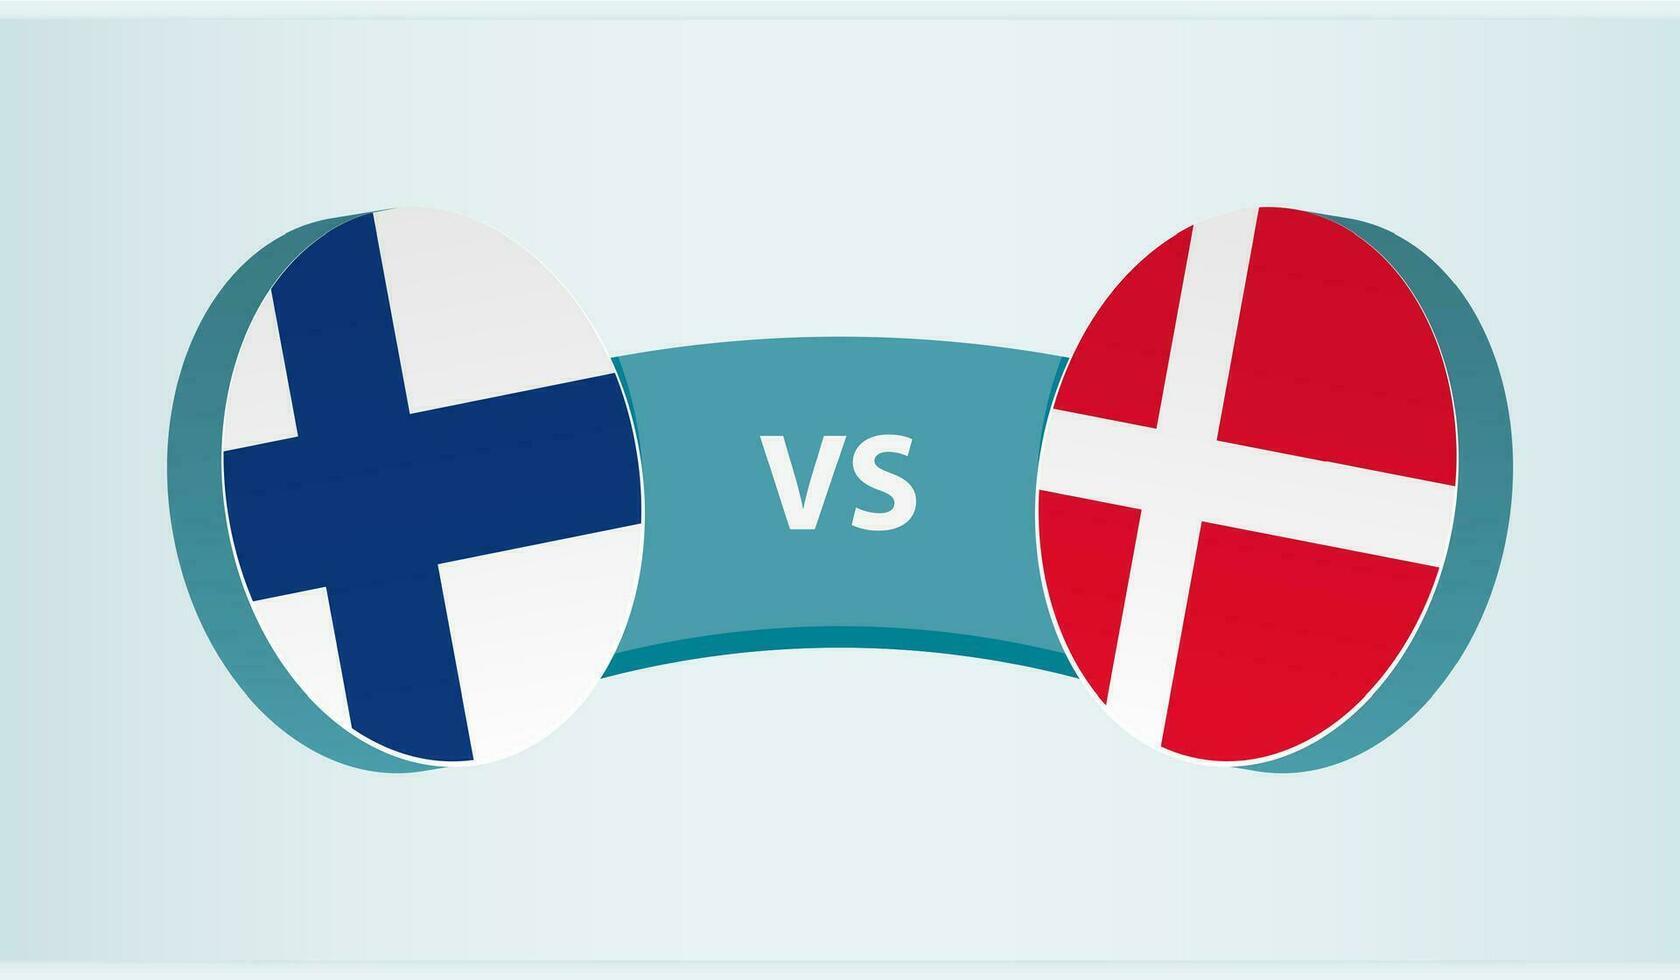 finland mot Danmark, team sporter konkurrens begrepp. vektor